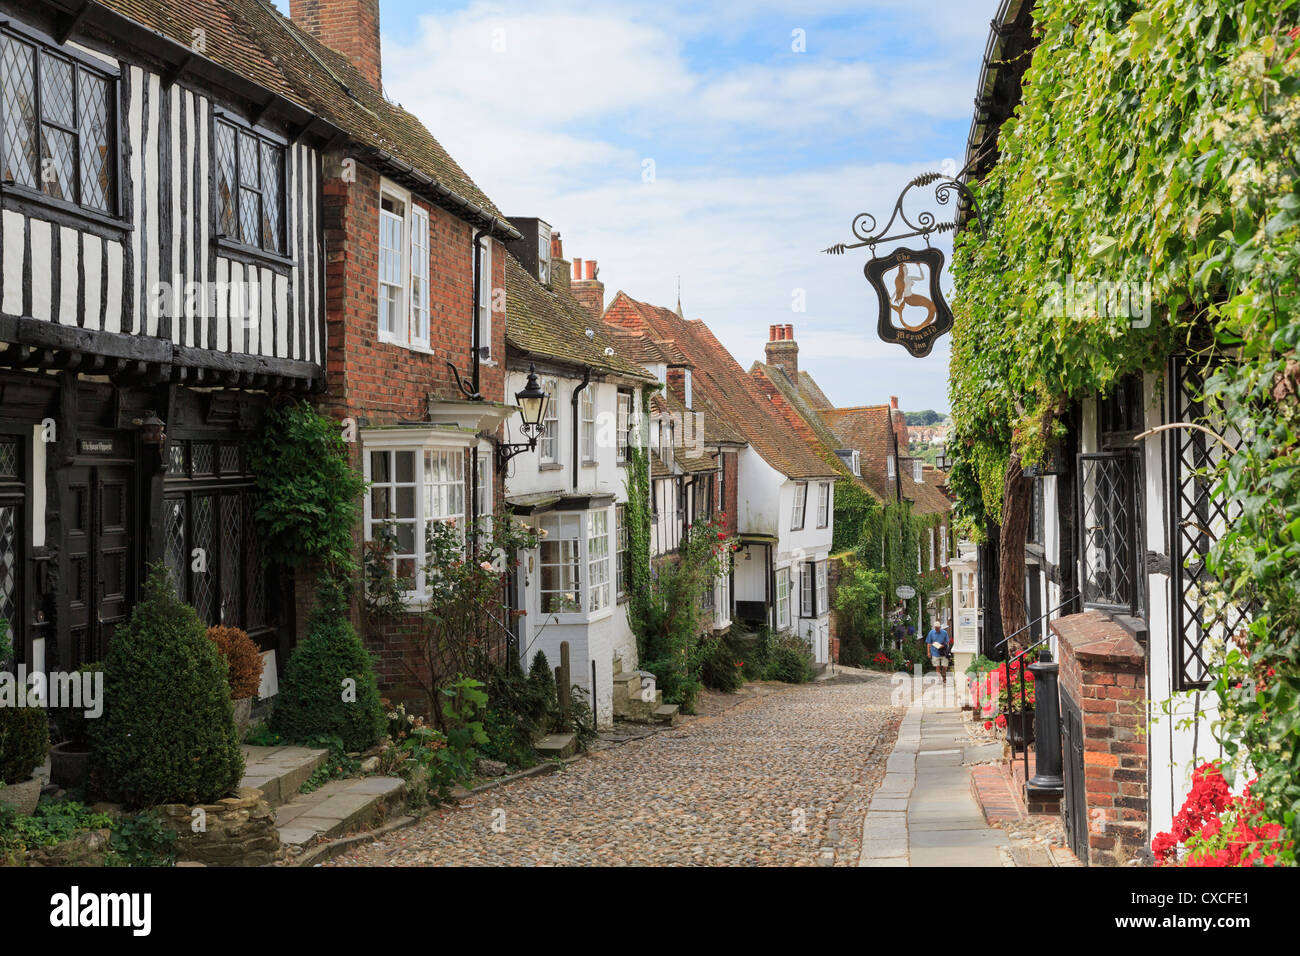 Berühmte enge gepflasterte Straße mit malerischen alten Häusern und verwunschenen Inn in der historischen Cinque Port Stadt. Mermaid Street Rye East Sussex England Großbritannien Stockfoto